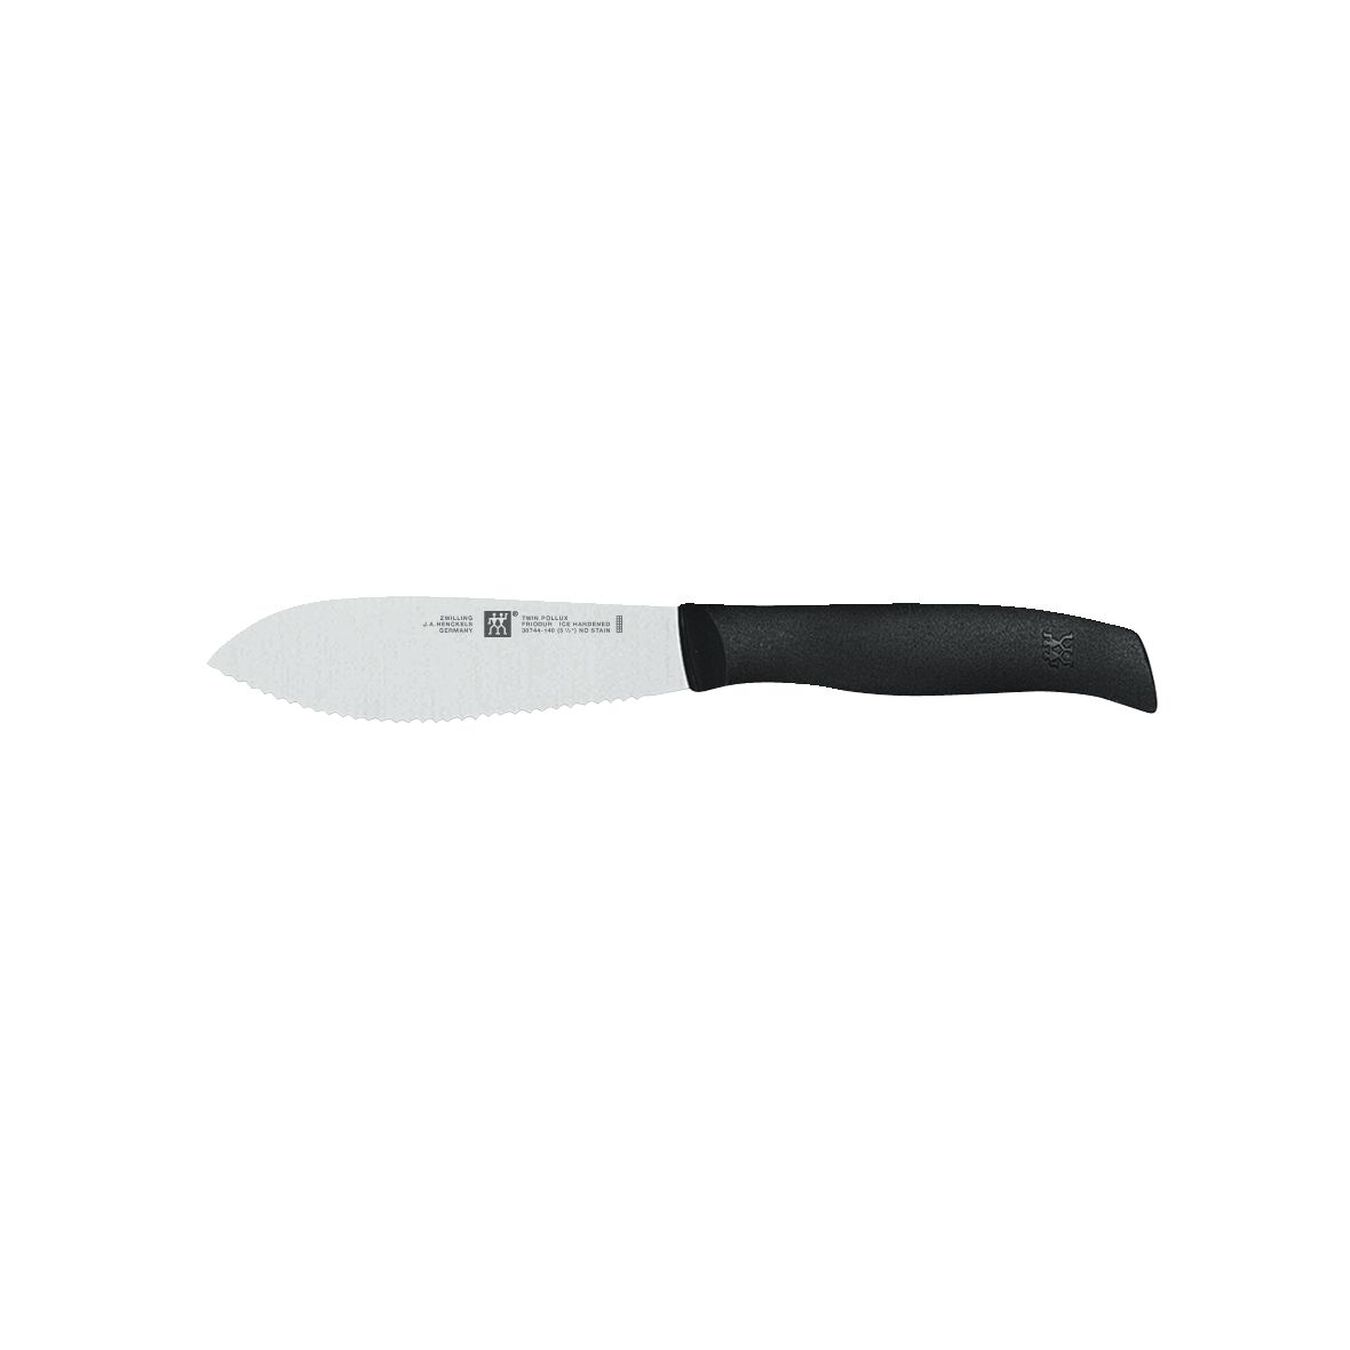 11 cm Utility knife,,large 2